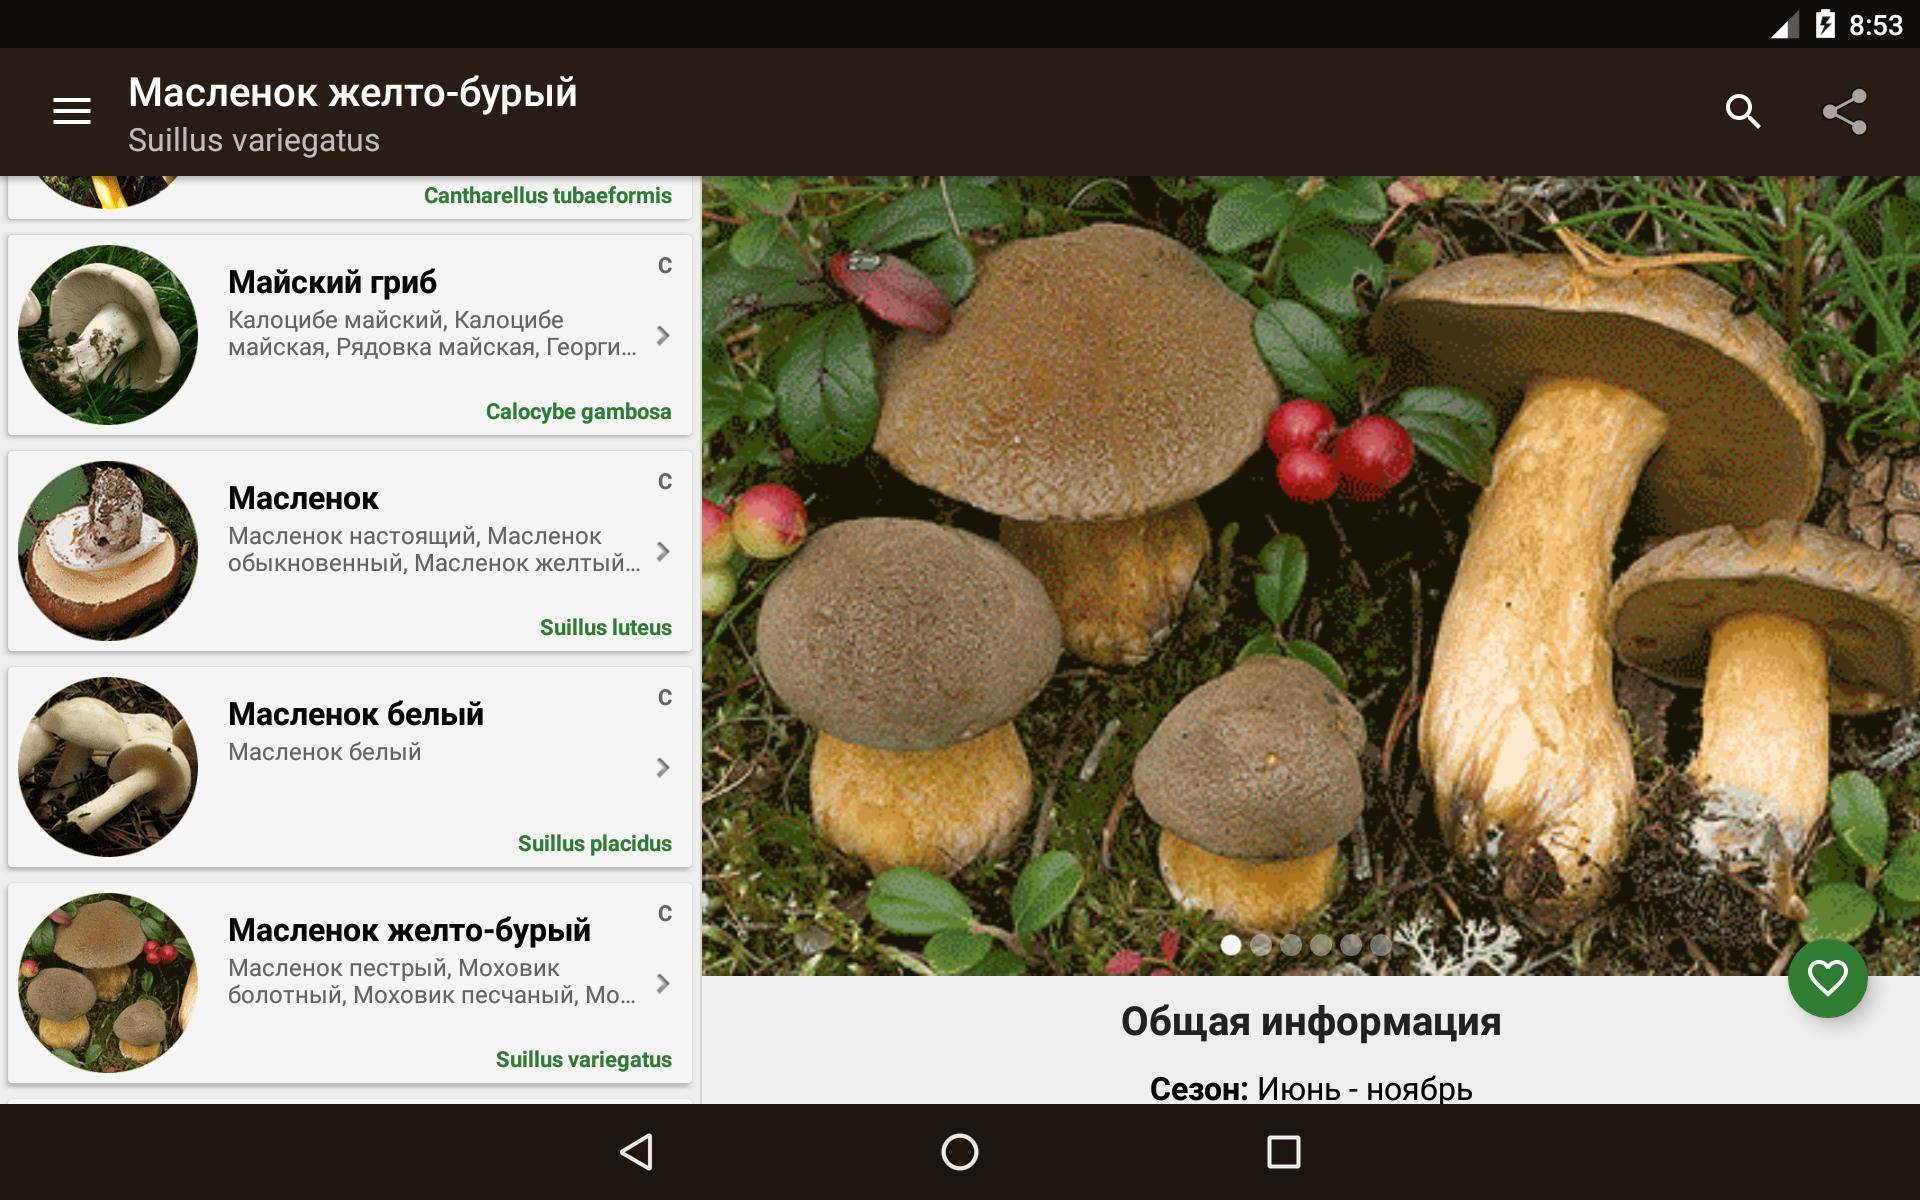 Фото съедобных грибов с названиями и описанием в ленинградской области